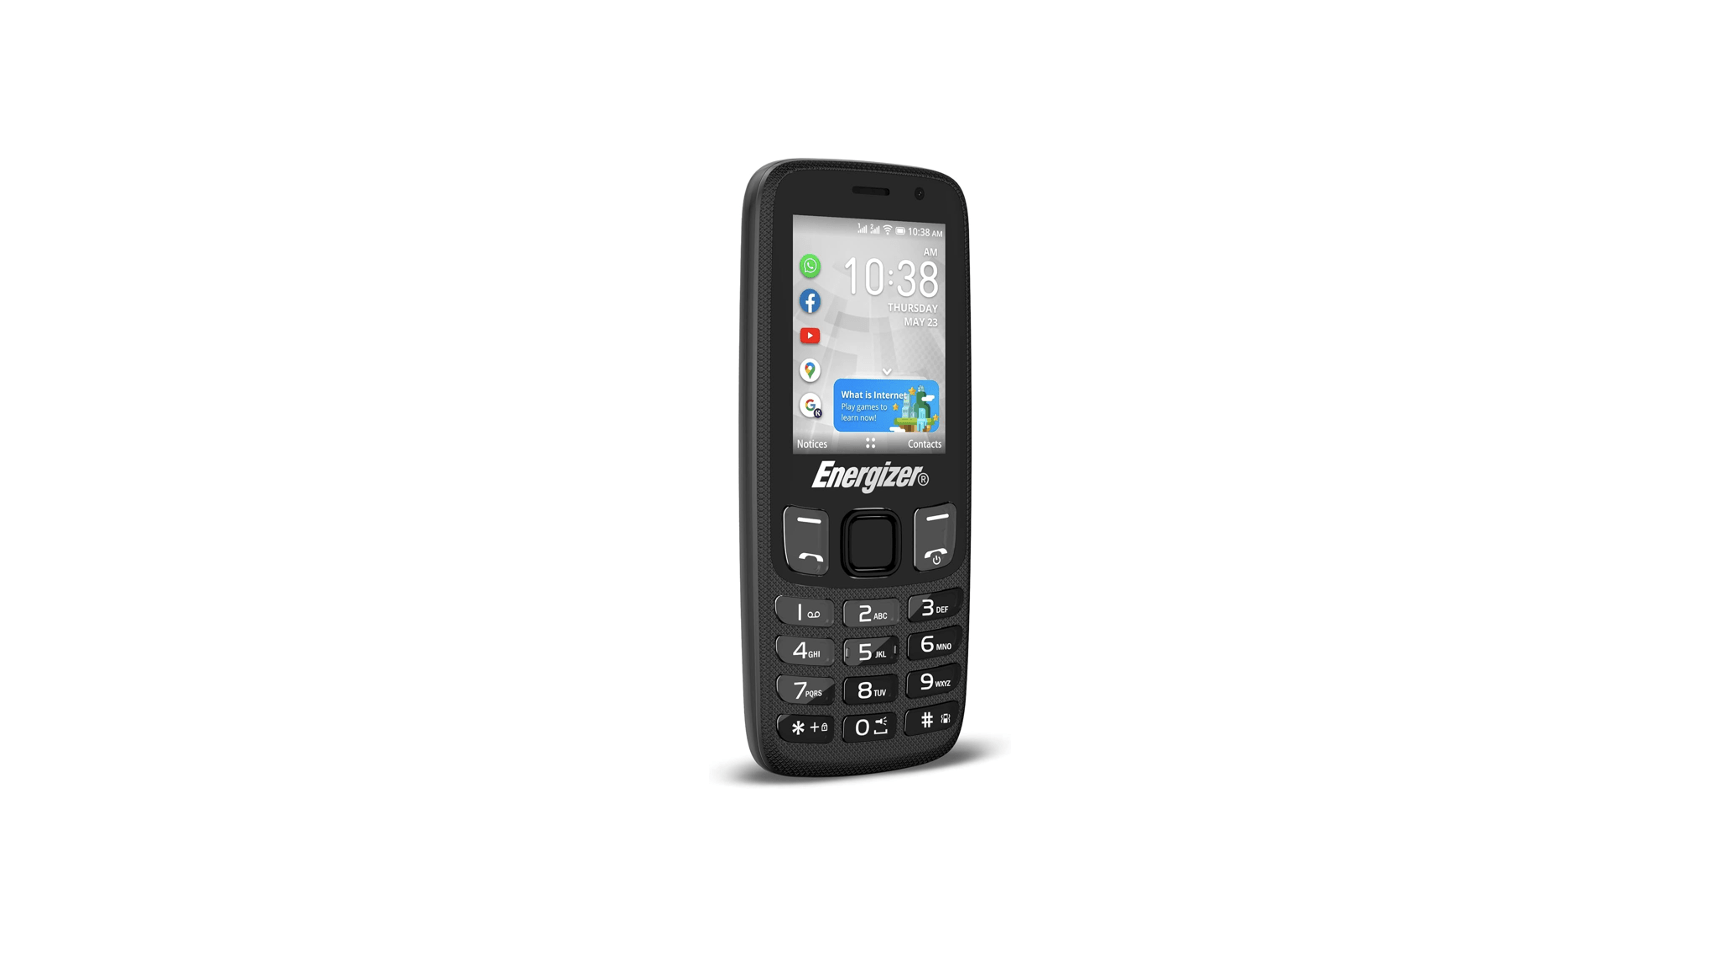 Teléfono móvil para personas mayores S760 4G 2.8+1.44 KaiOS Rojo- Te